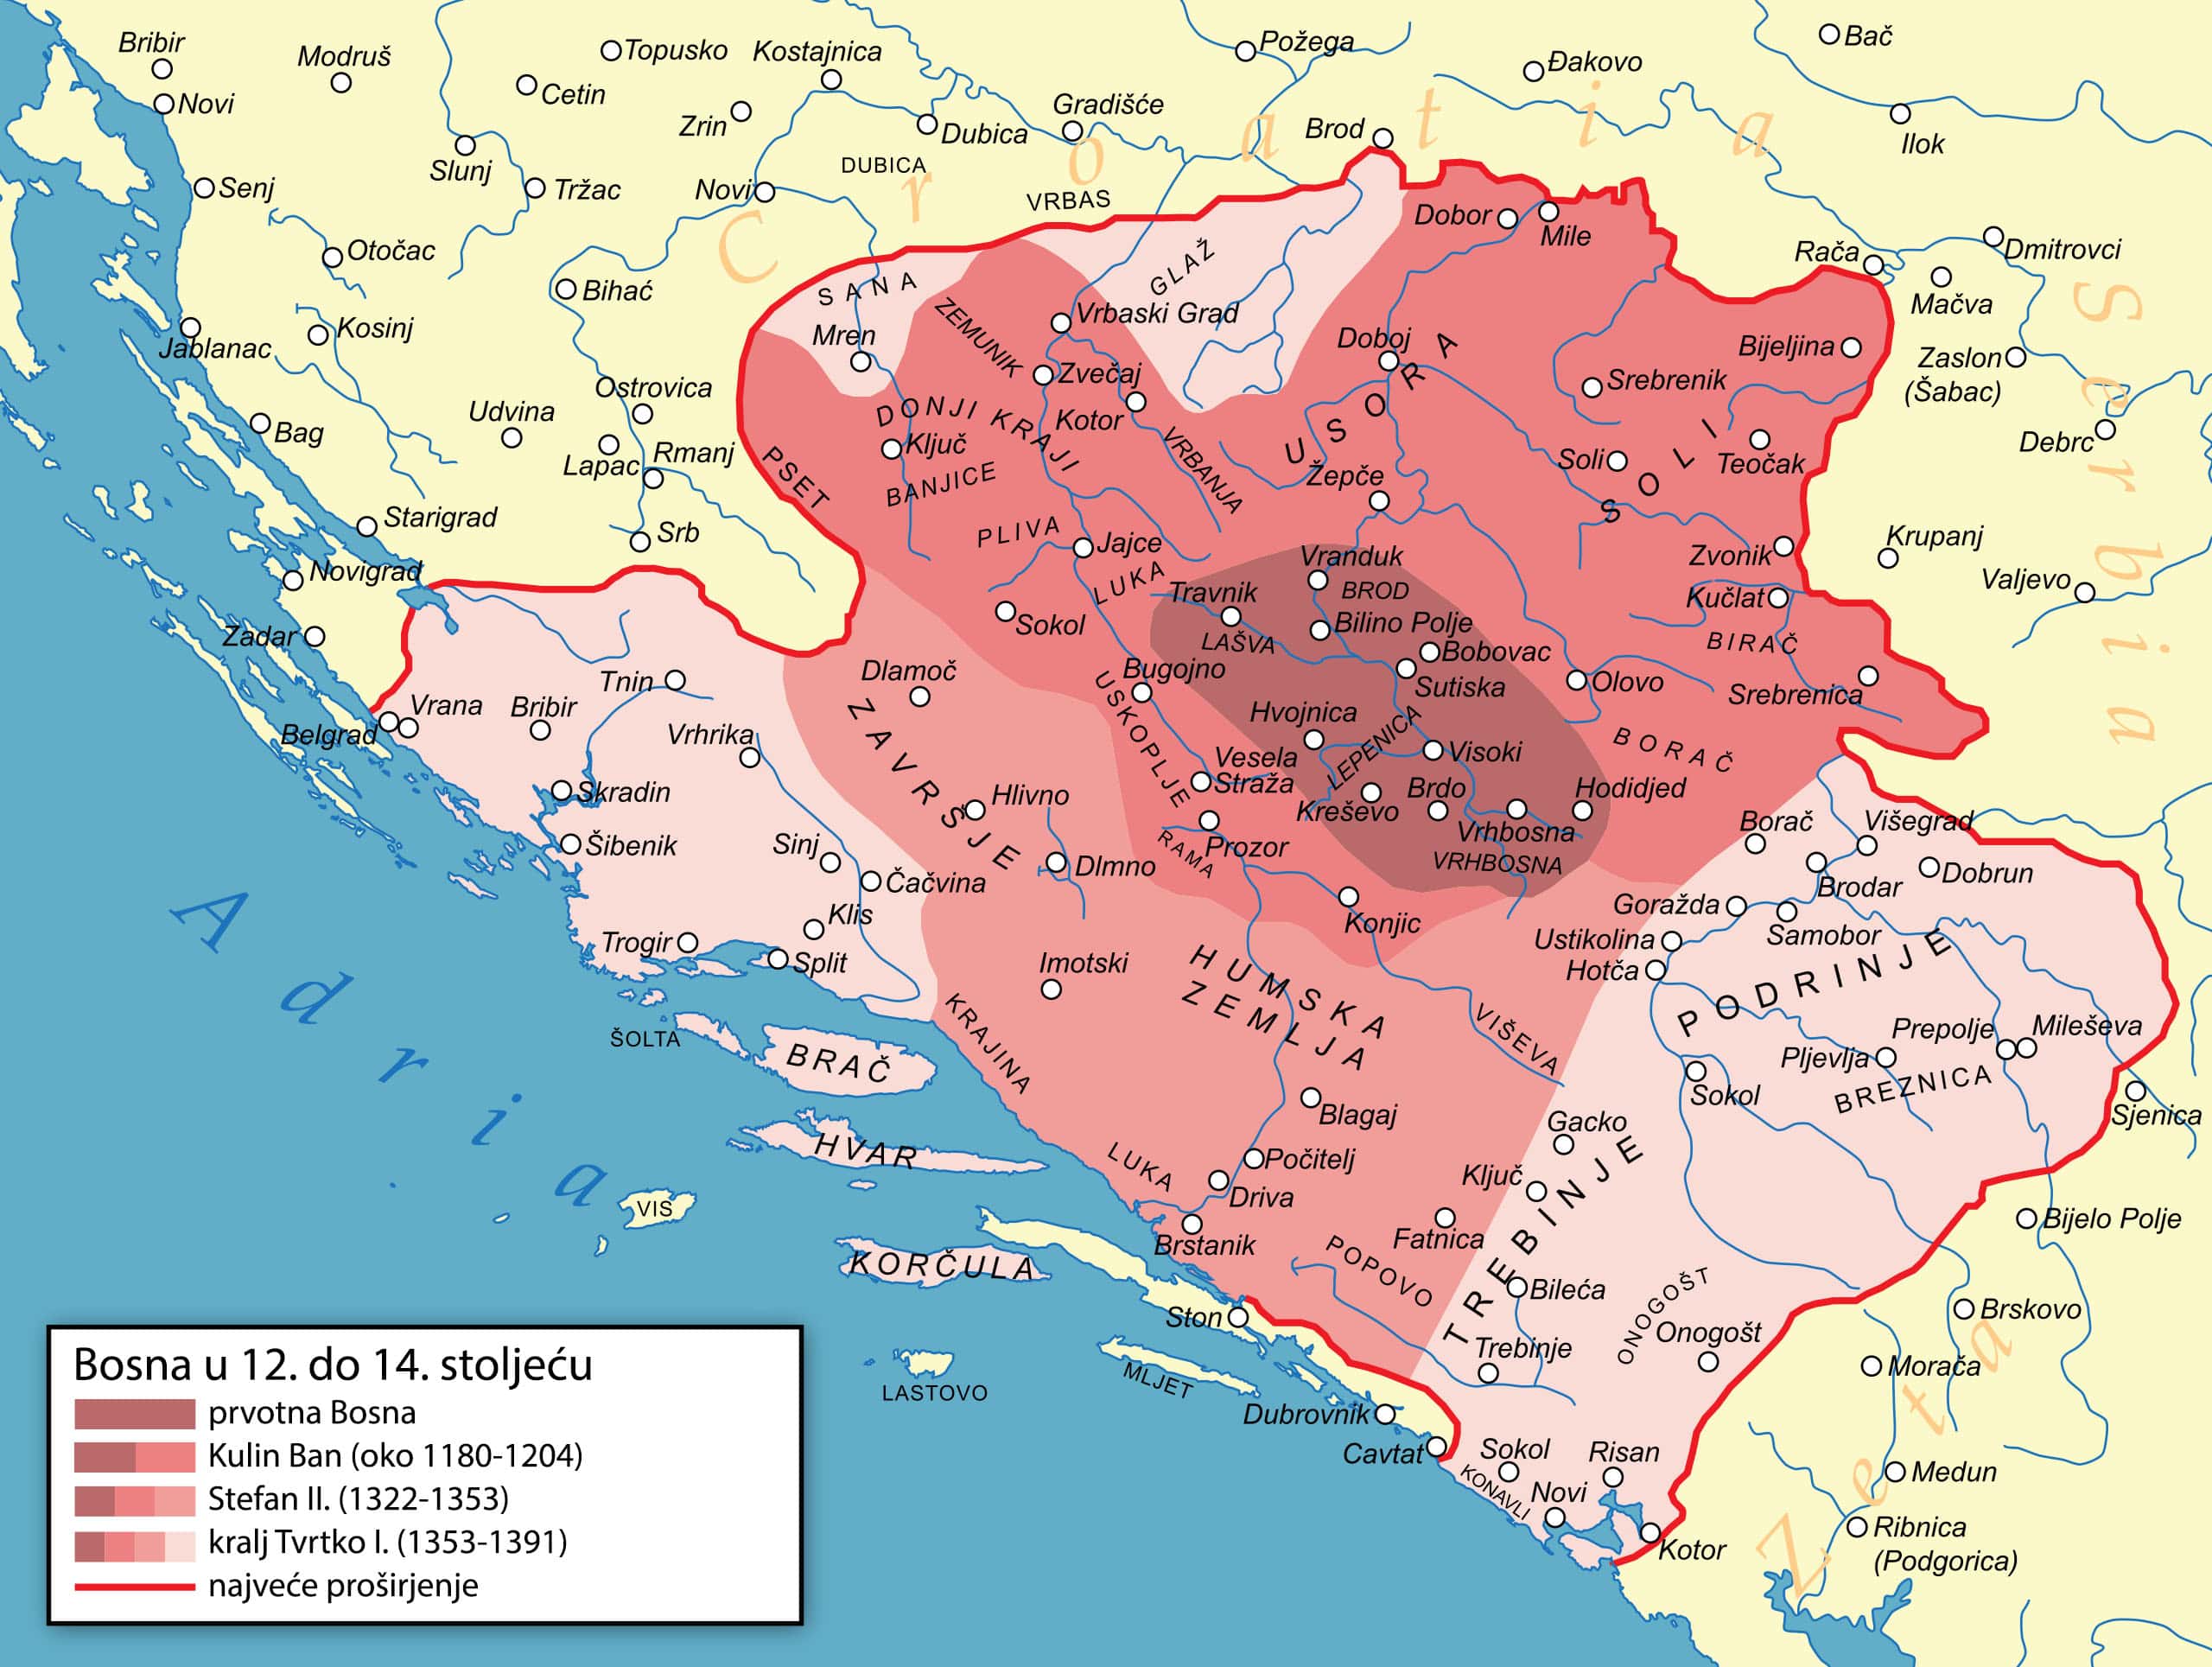 Proširenje Bosanskog kraljevstva od 12.-14. stoleća